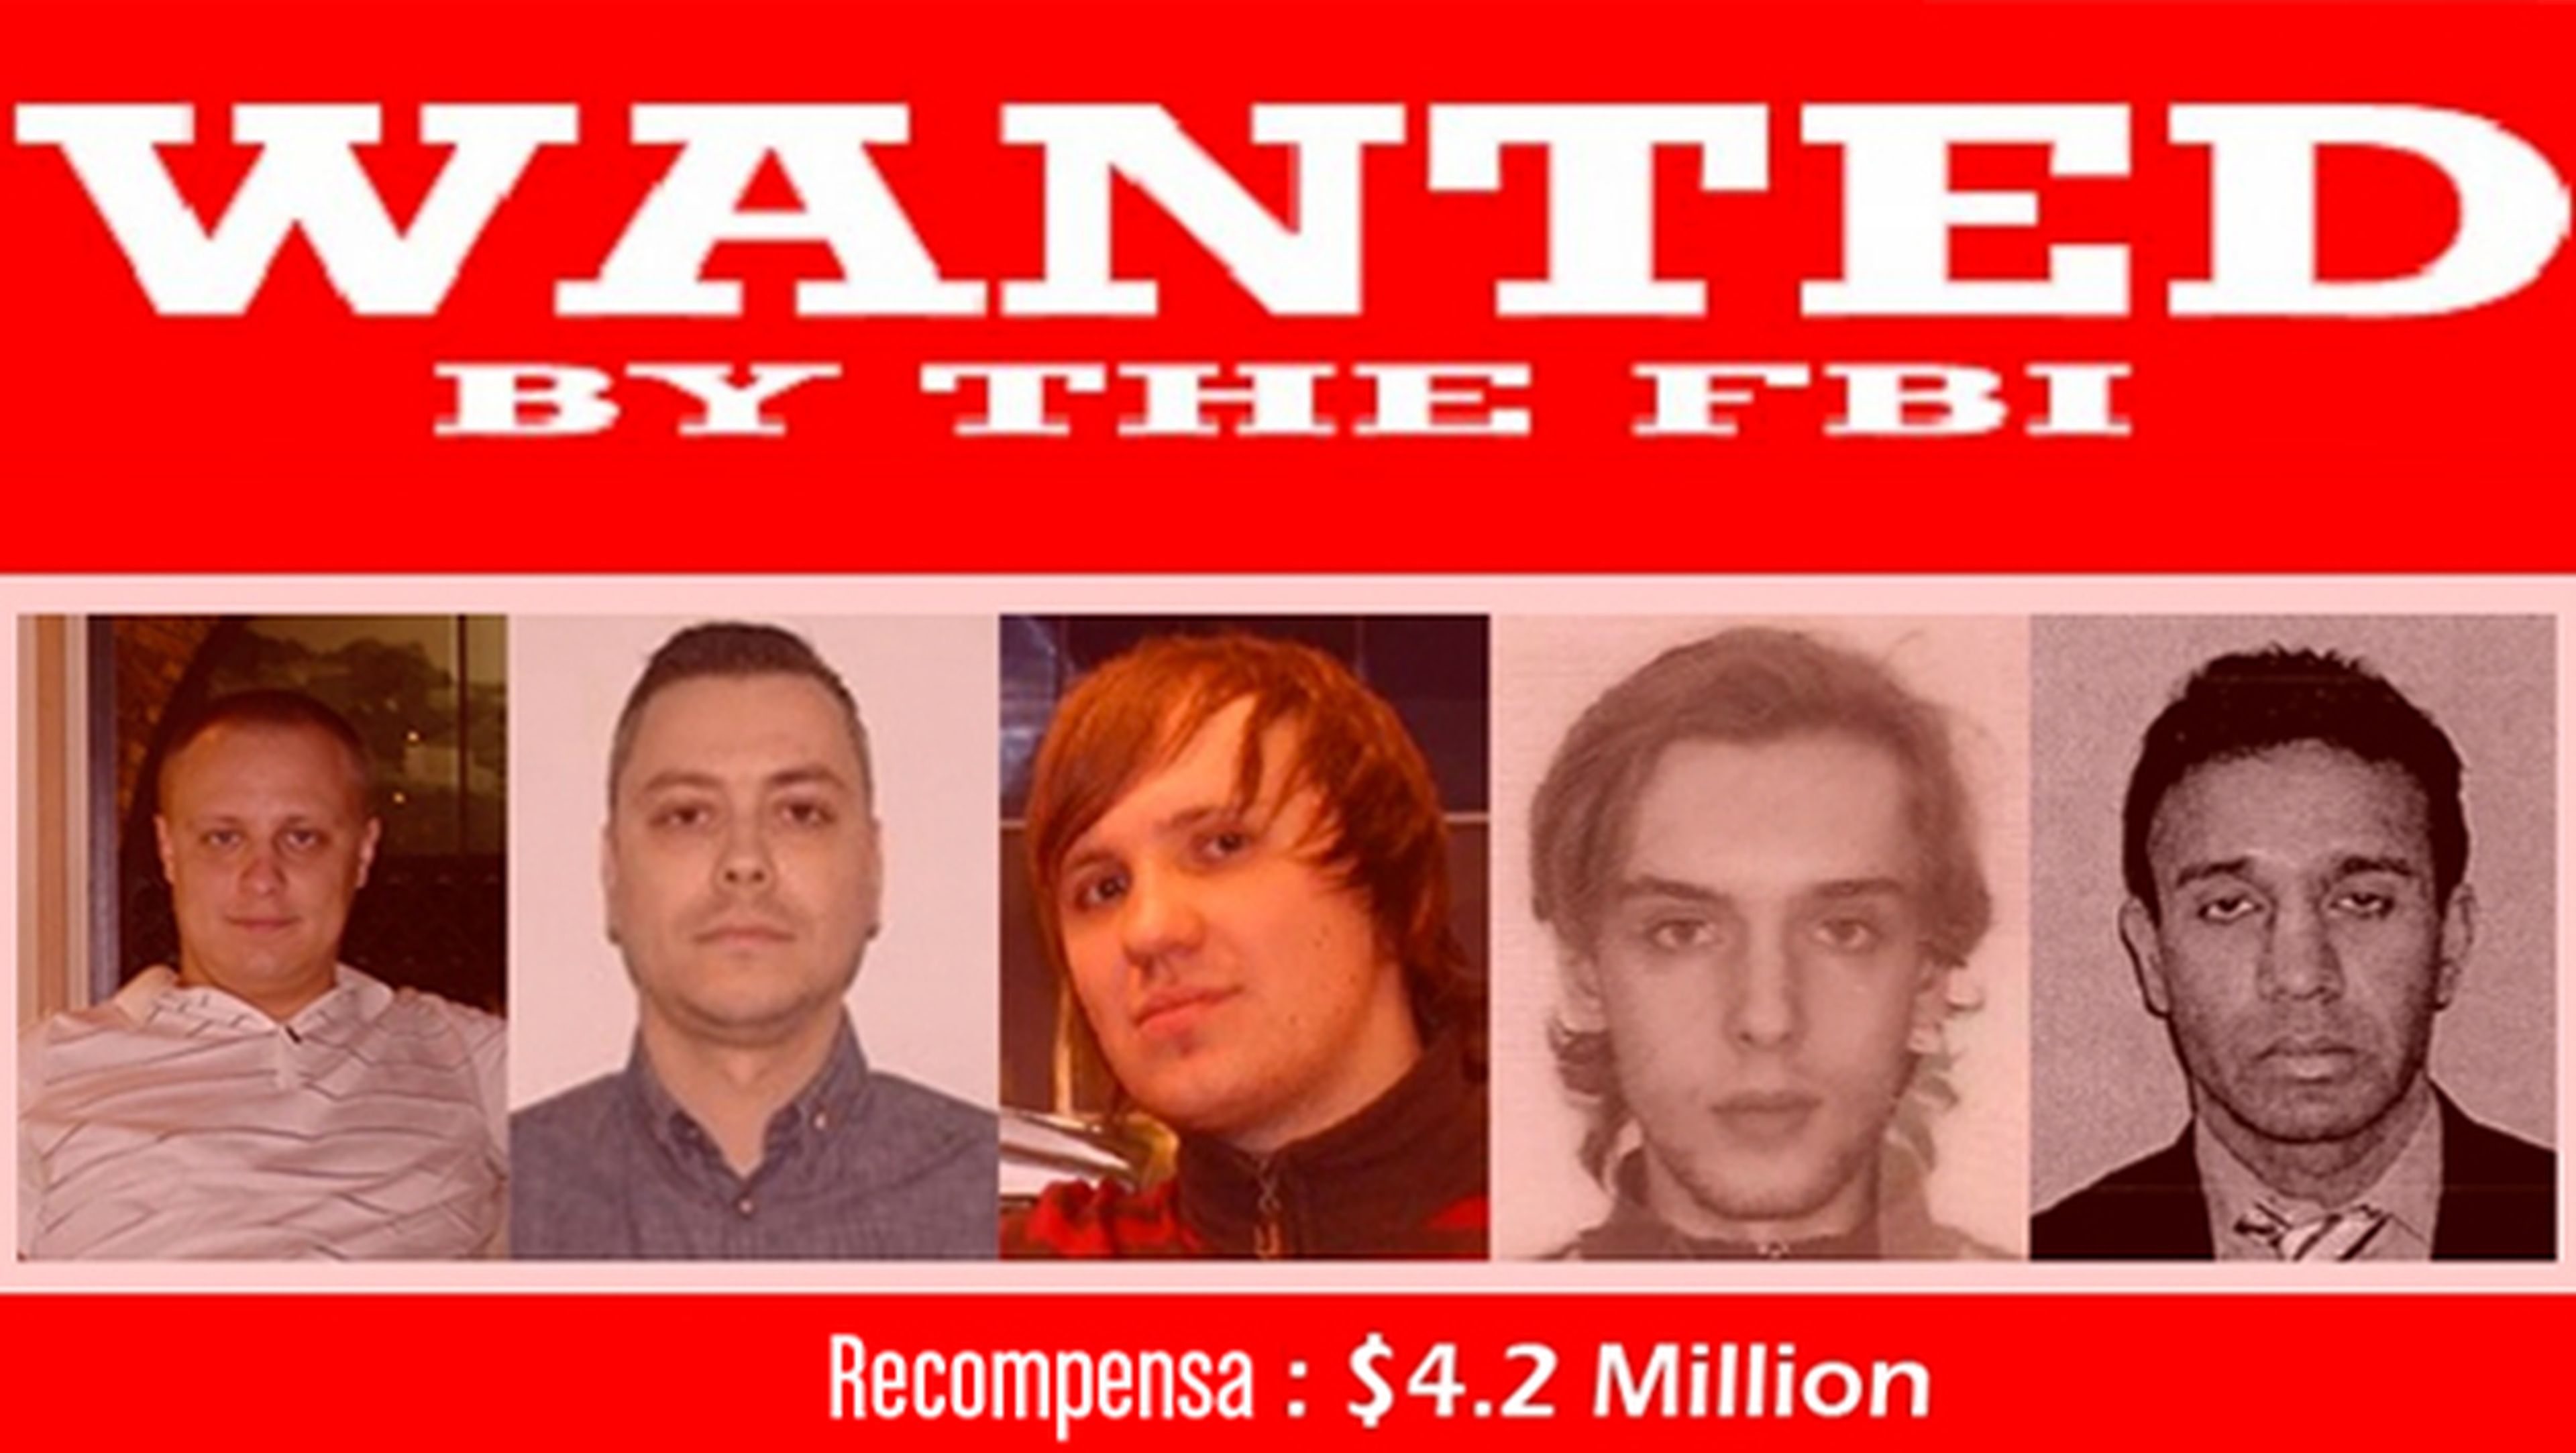 Los cinco hackers más buscados por el FBI